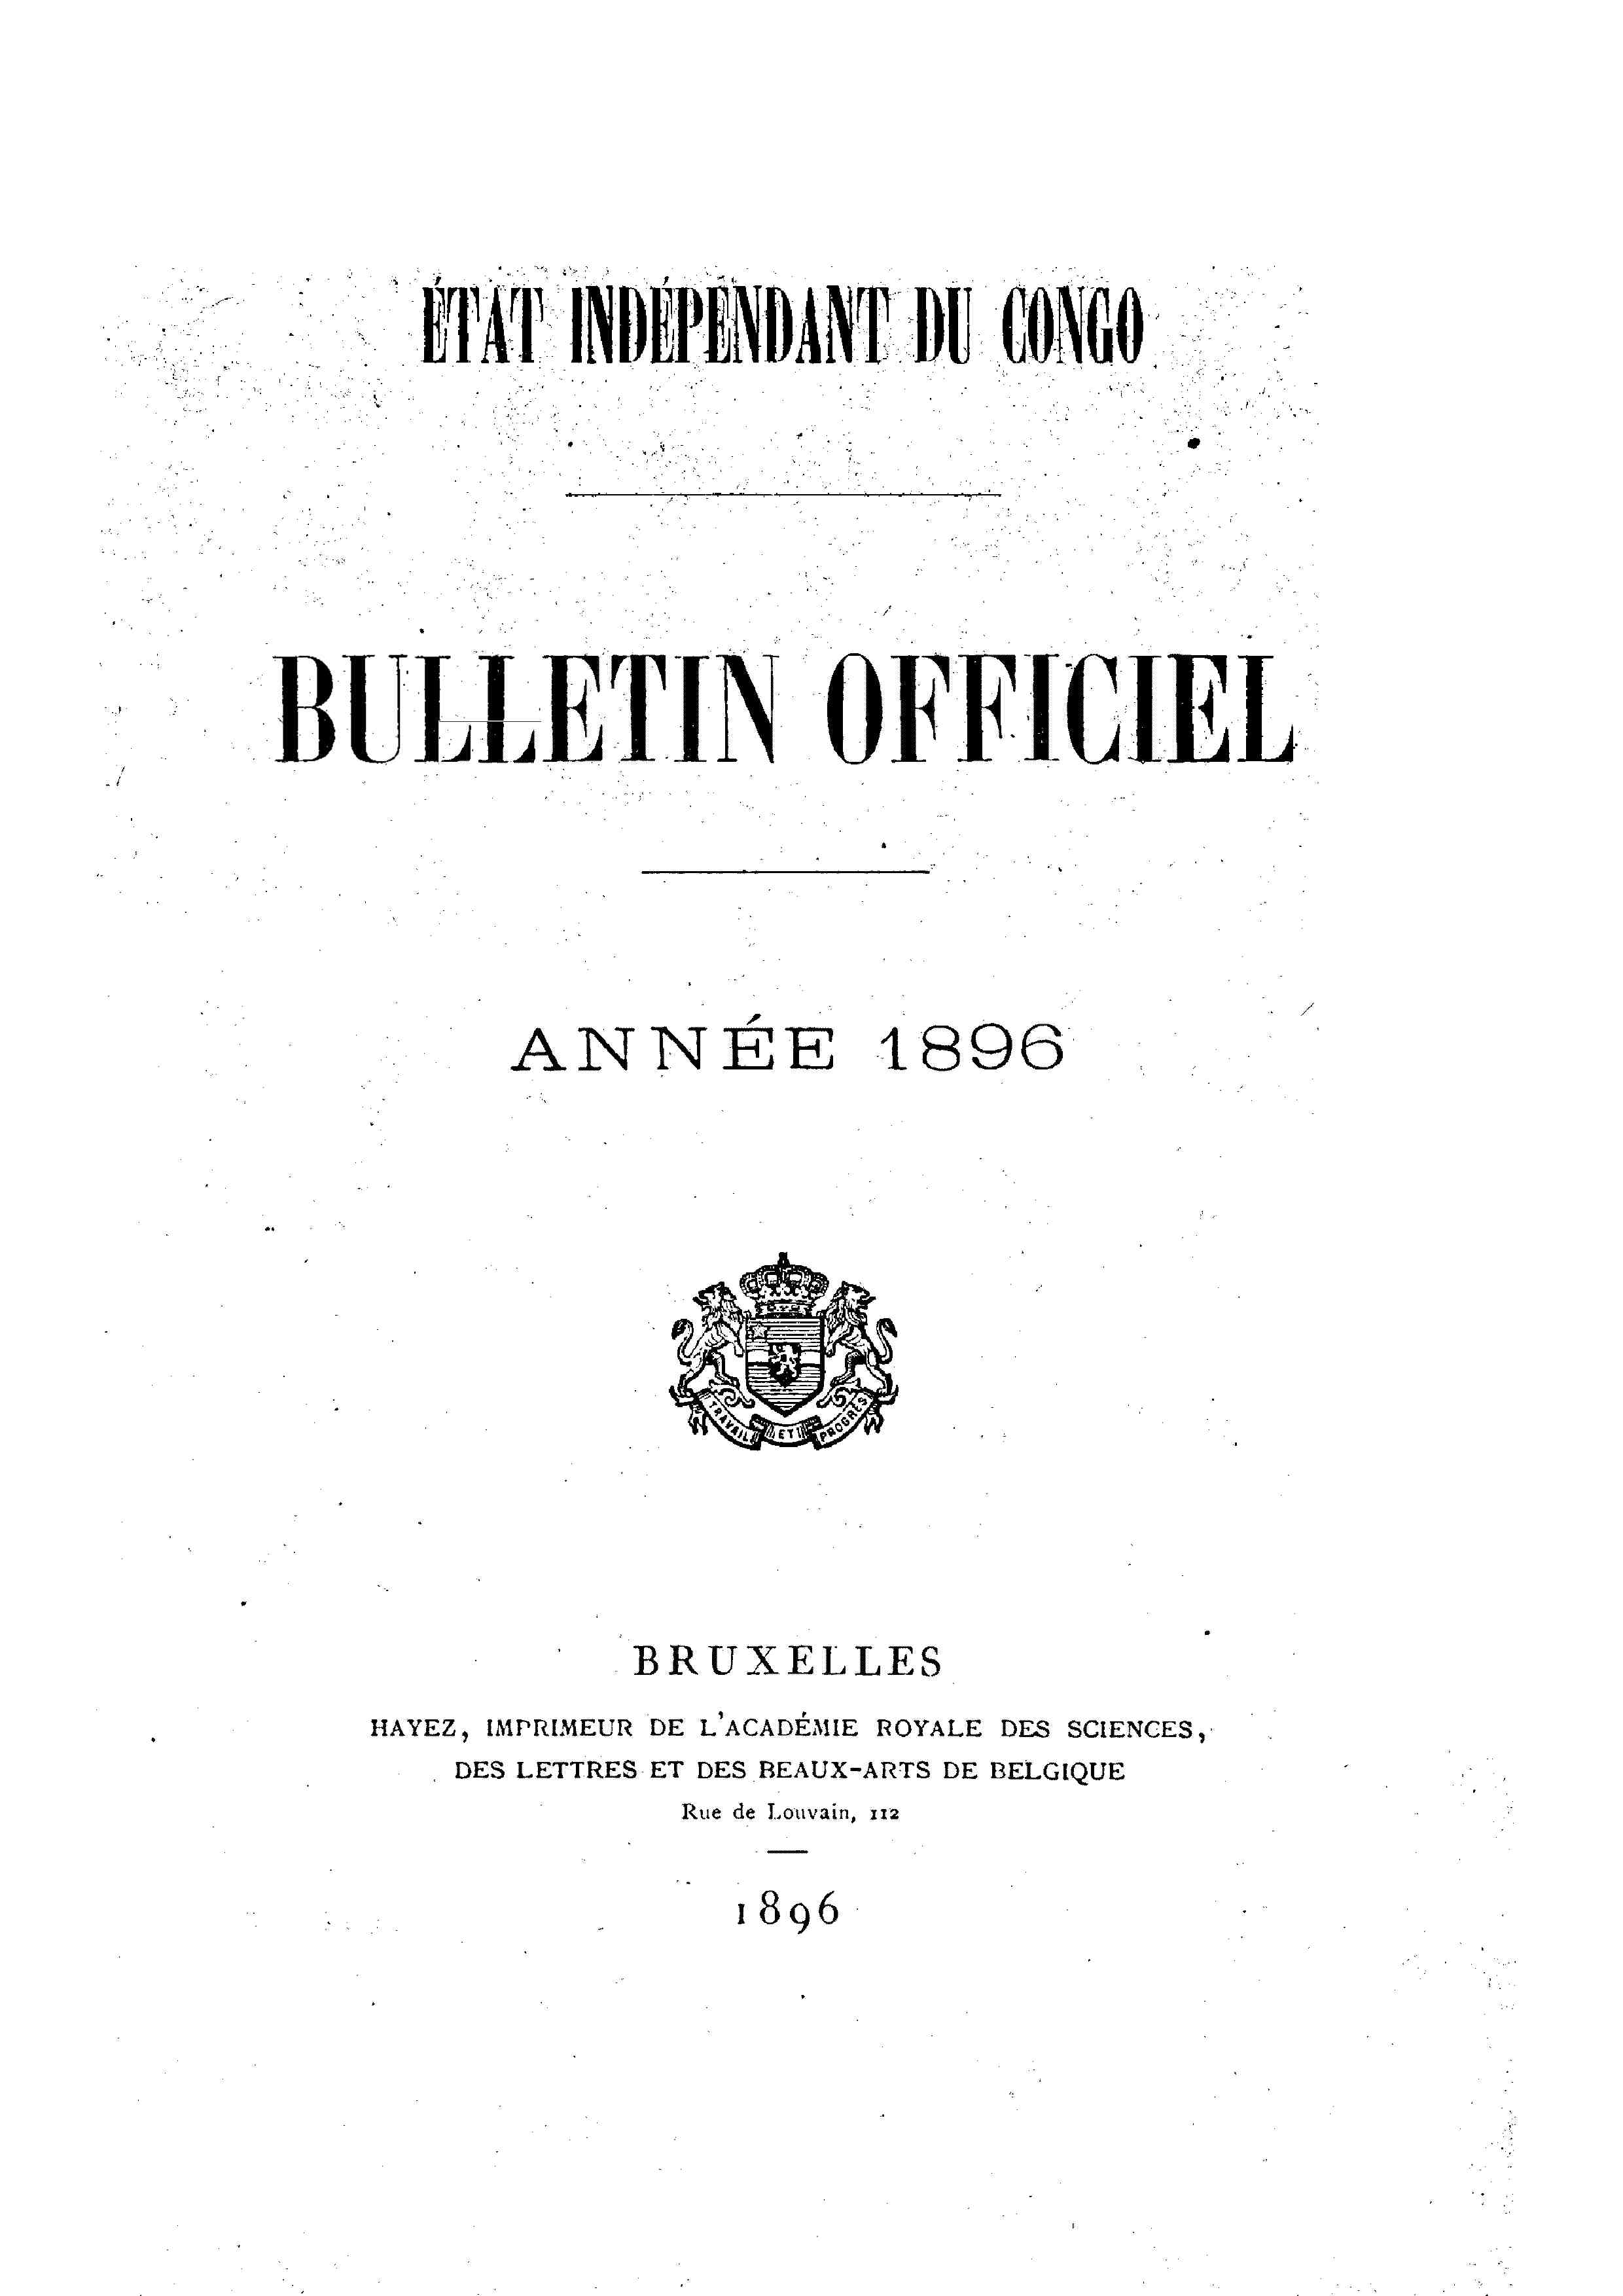 Book cover 202106132411: Etat Indépendant du Congo - roi Léopold II | Etat Indépendant du Congo - Bulletin Officiel – Année 1896